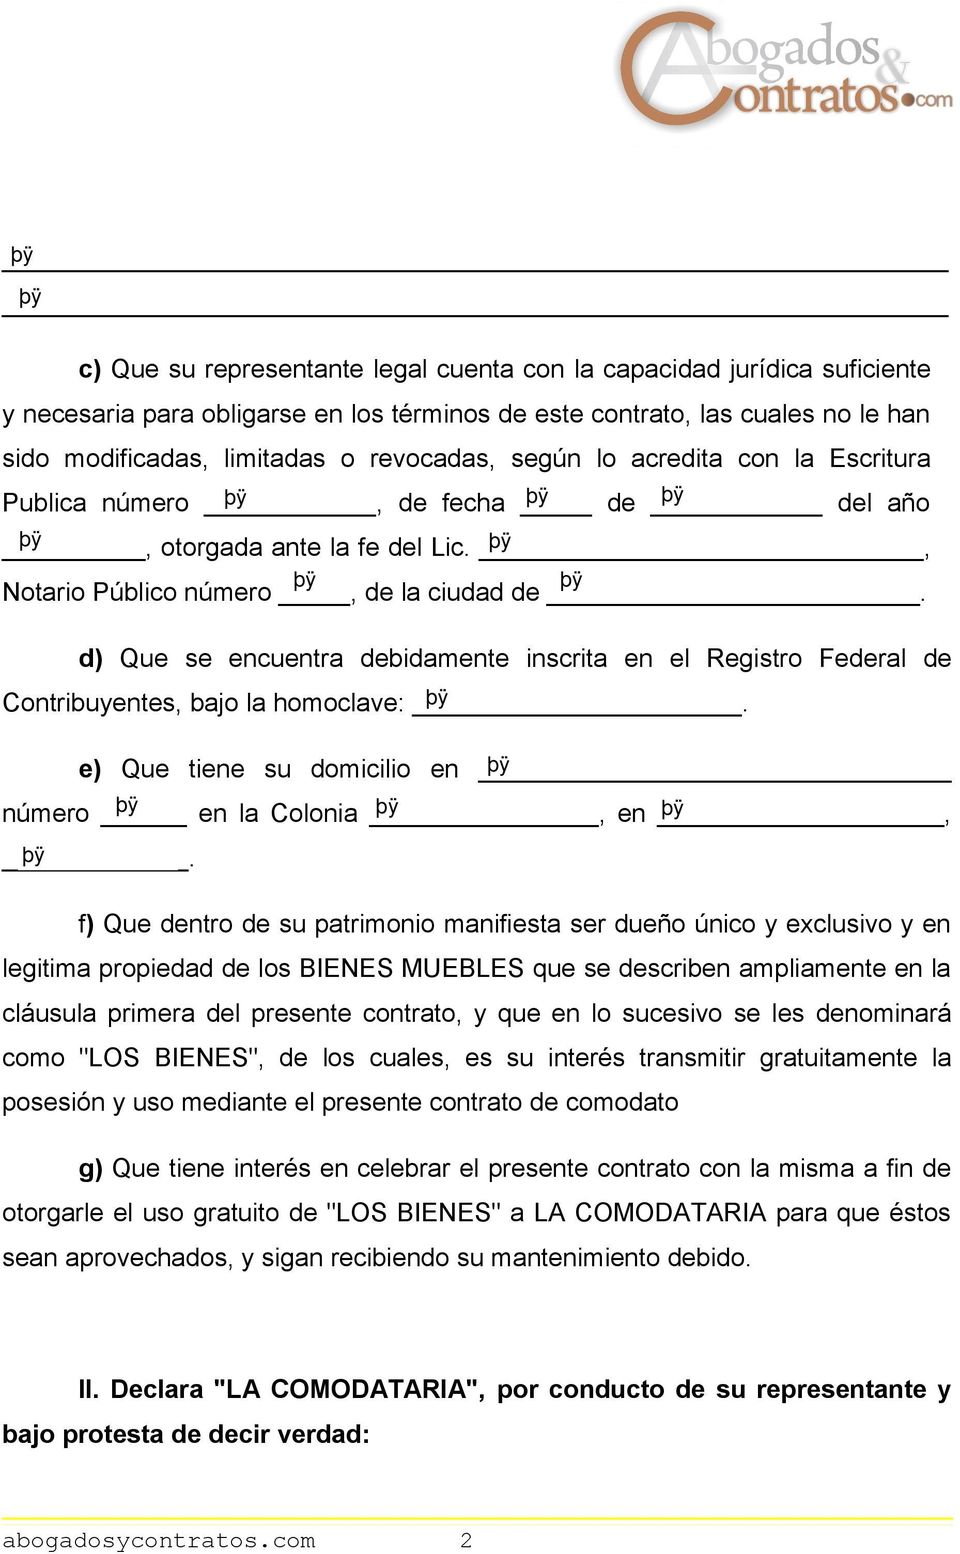 CONTRATO DE COMODATO DE BIENES MUEBLES ENTRE PERSONAS JURÍDICAS - PDF Free  Download